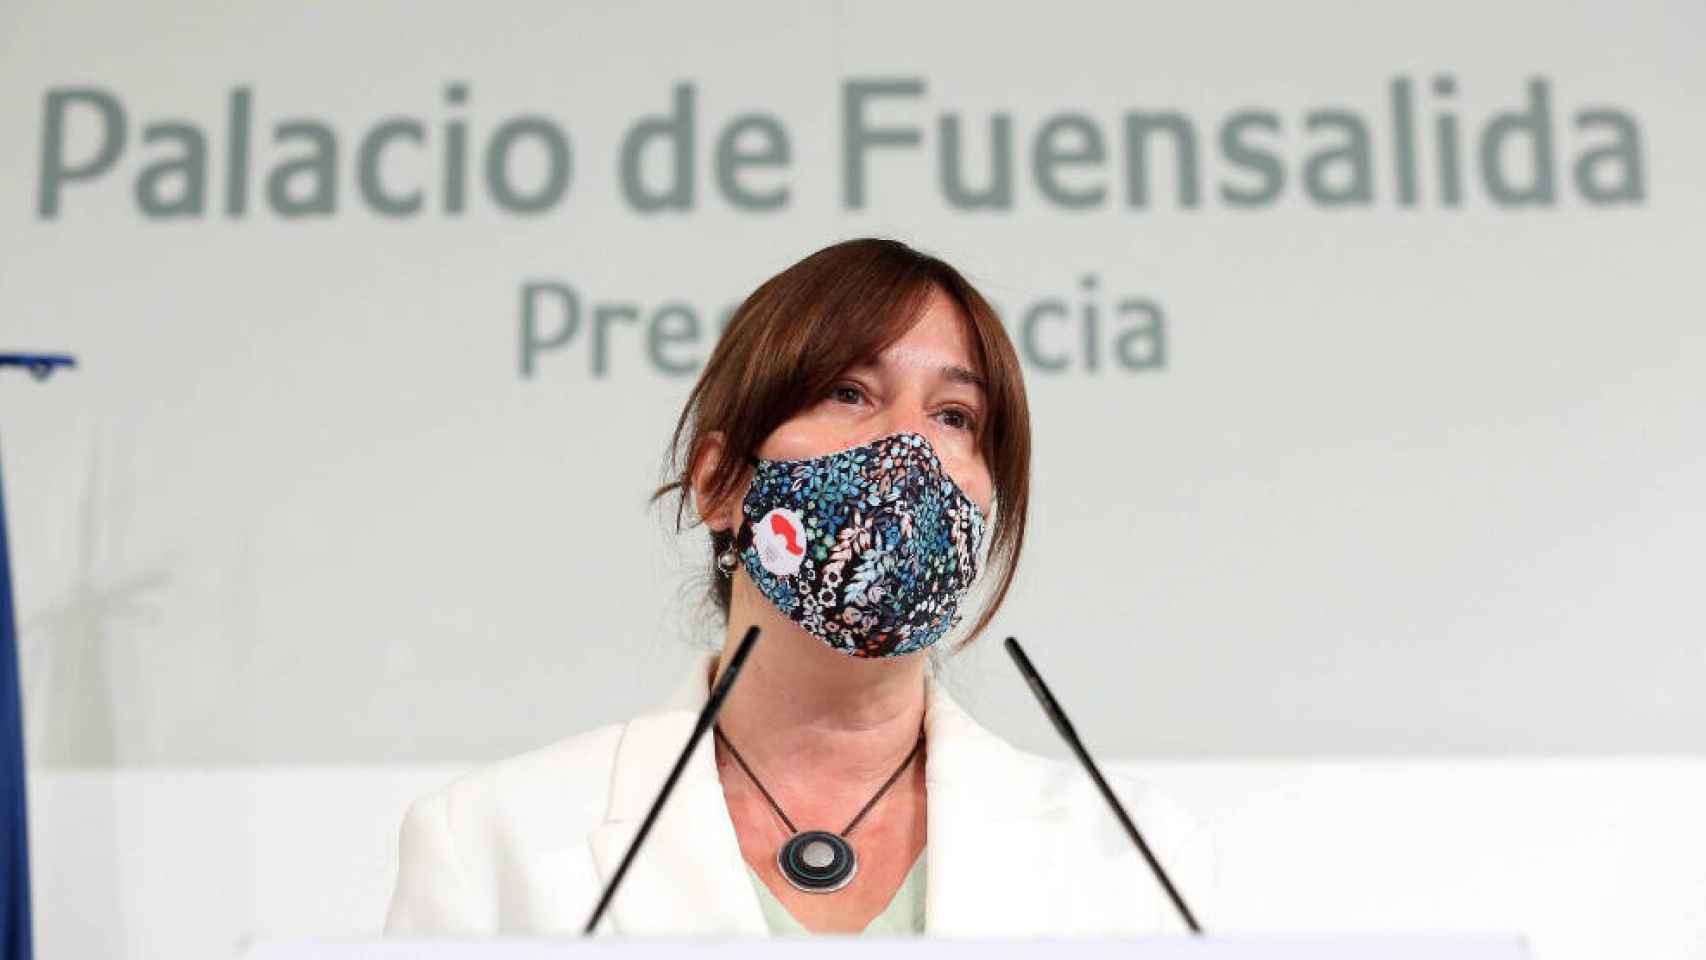 Blanca Fernández, consejera de Igualdad y portavoz del Gobierno de Castilla-La Mancha. Foto: Óscar Huertas